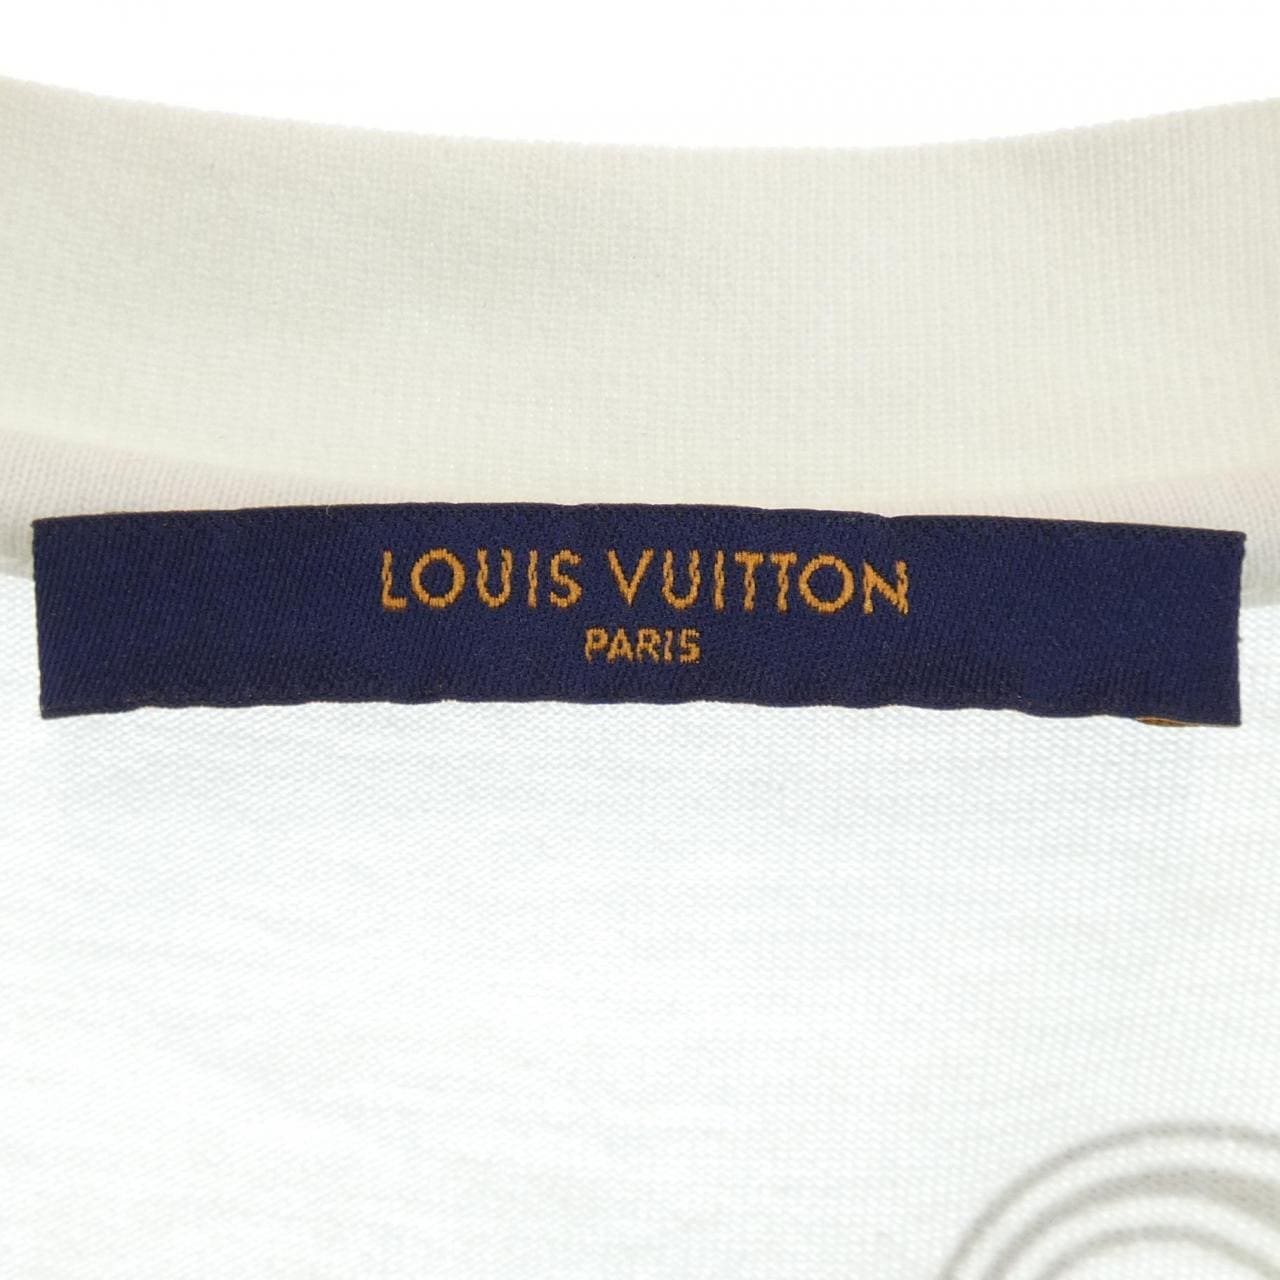 LOUIS VUITTON VUITTON T-shirt